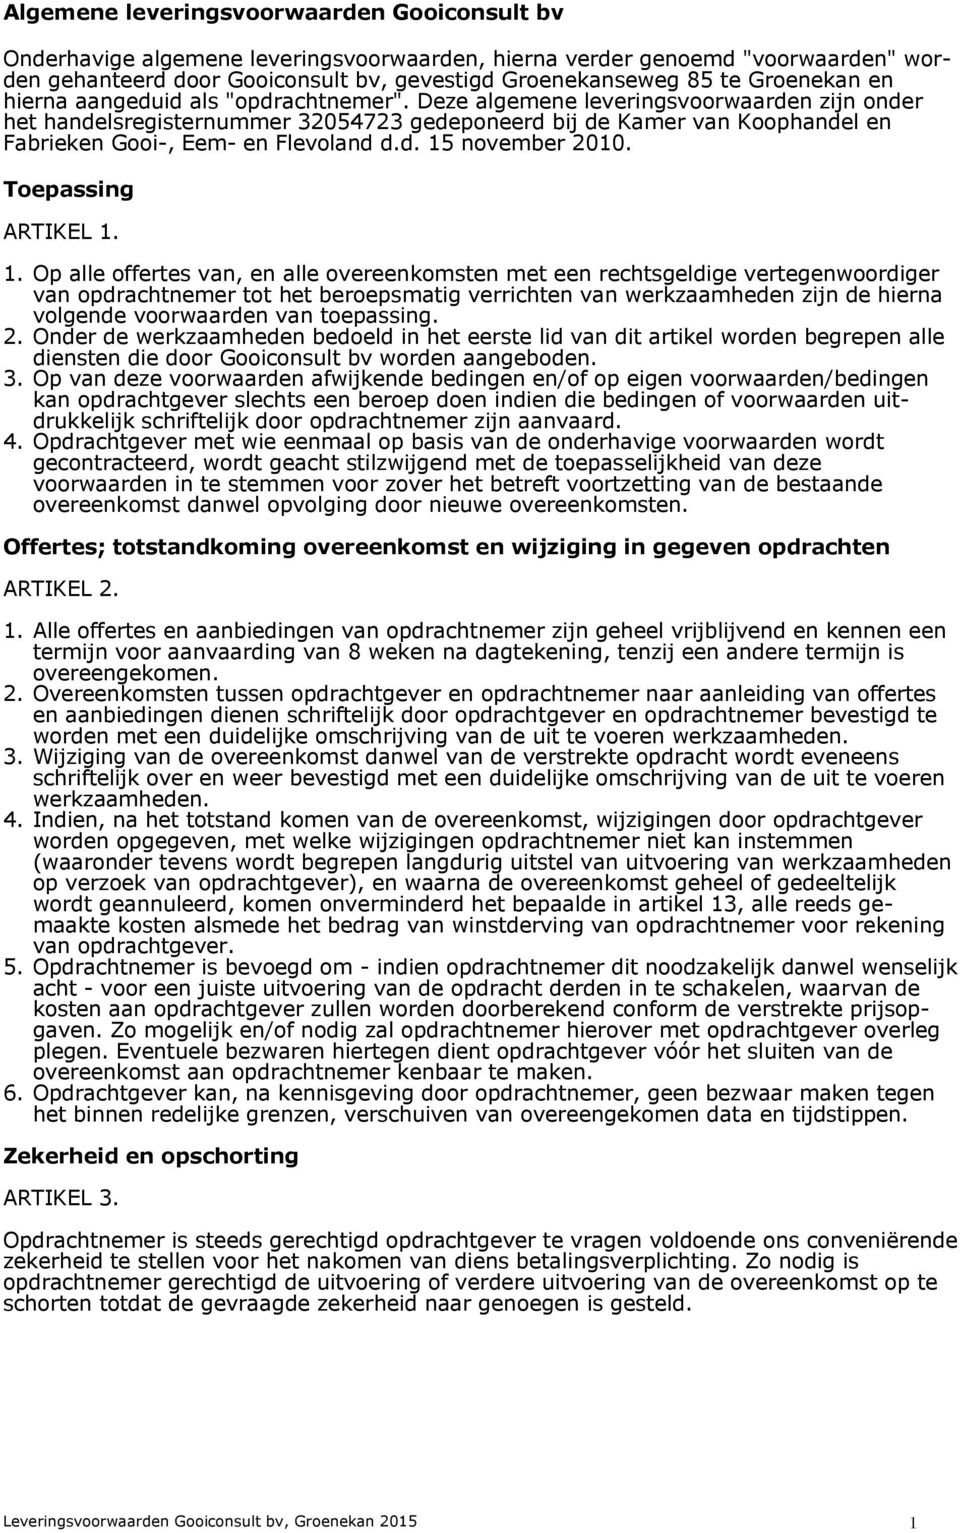 Deze algemene leveringsvoorwaarden zijn onder het handelsregisternummer 32054723 gedeponeerd bij de Kamer van Koophandel en Fabrieken Gooi-, Eem- en Flevoland d.d. 15 november 2010.